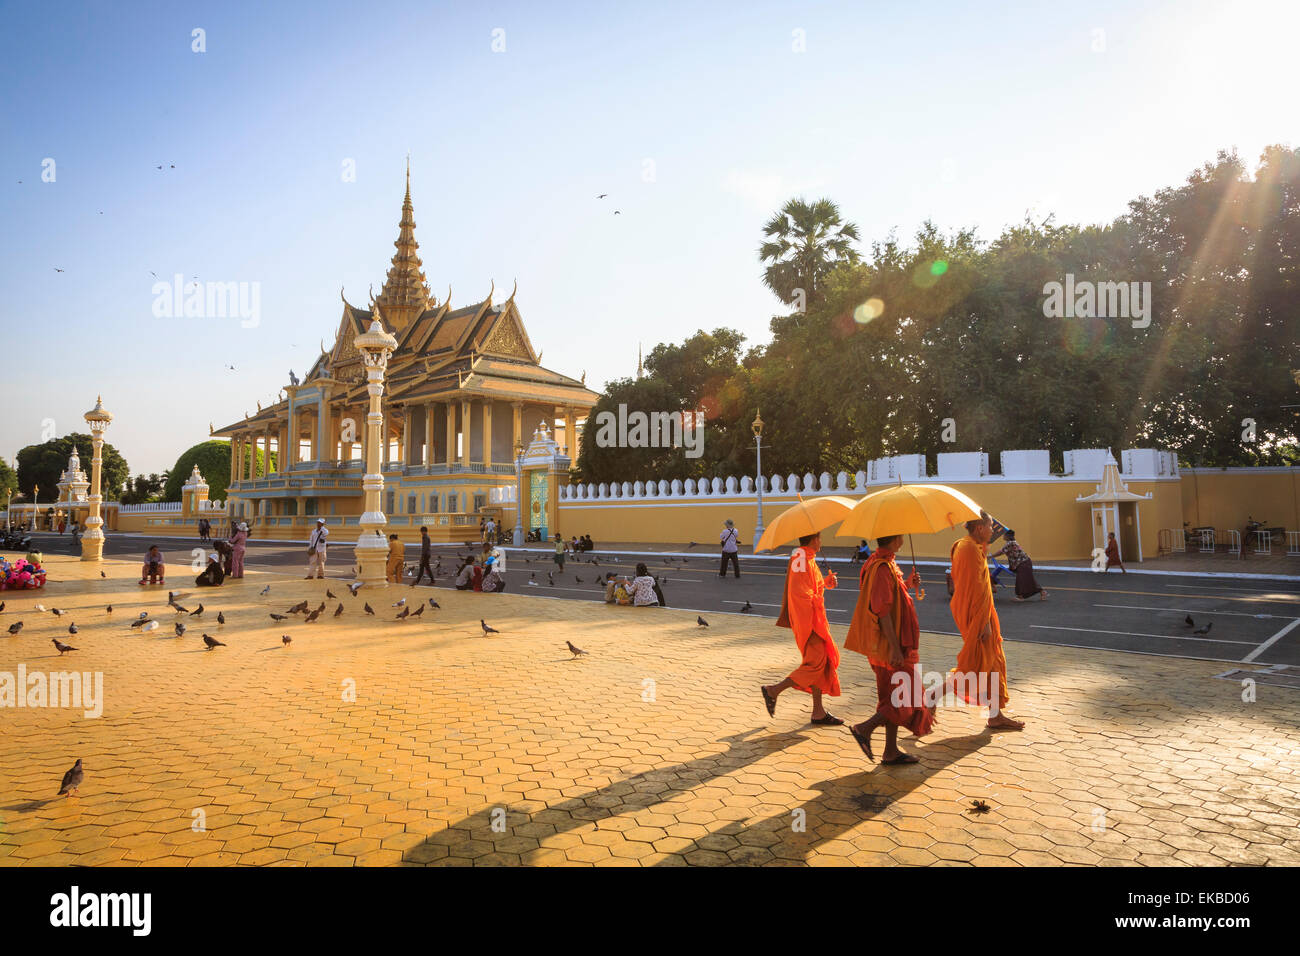 Les moines bouddhistes, sur une place en face du Palais Royal, Phnom Penh, Cambodge, Indochine, Asie du Sud, Asie Banque D'Images